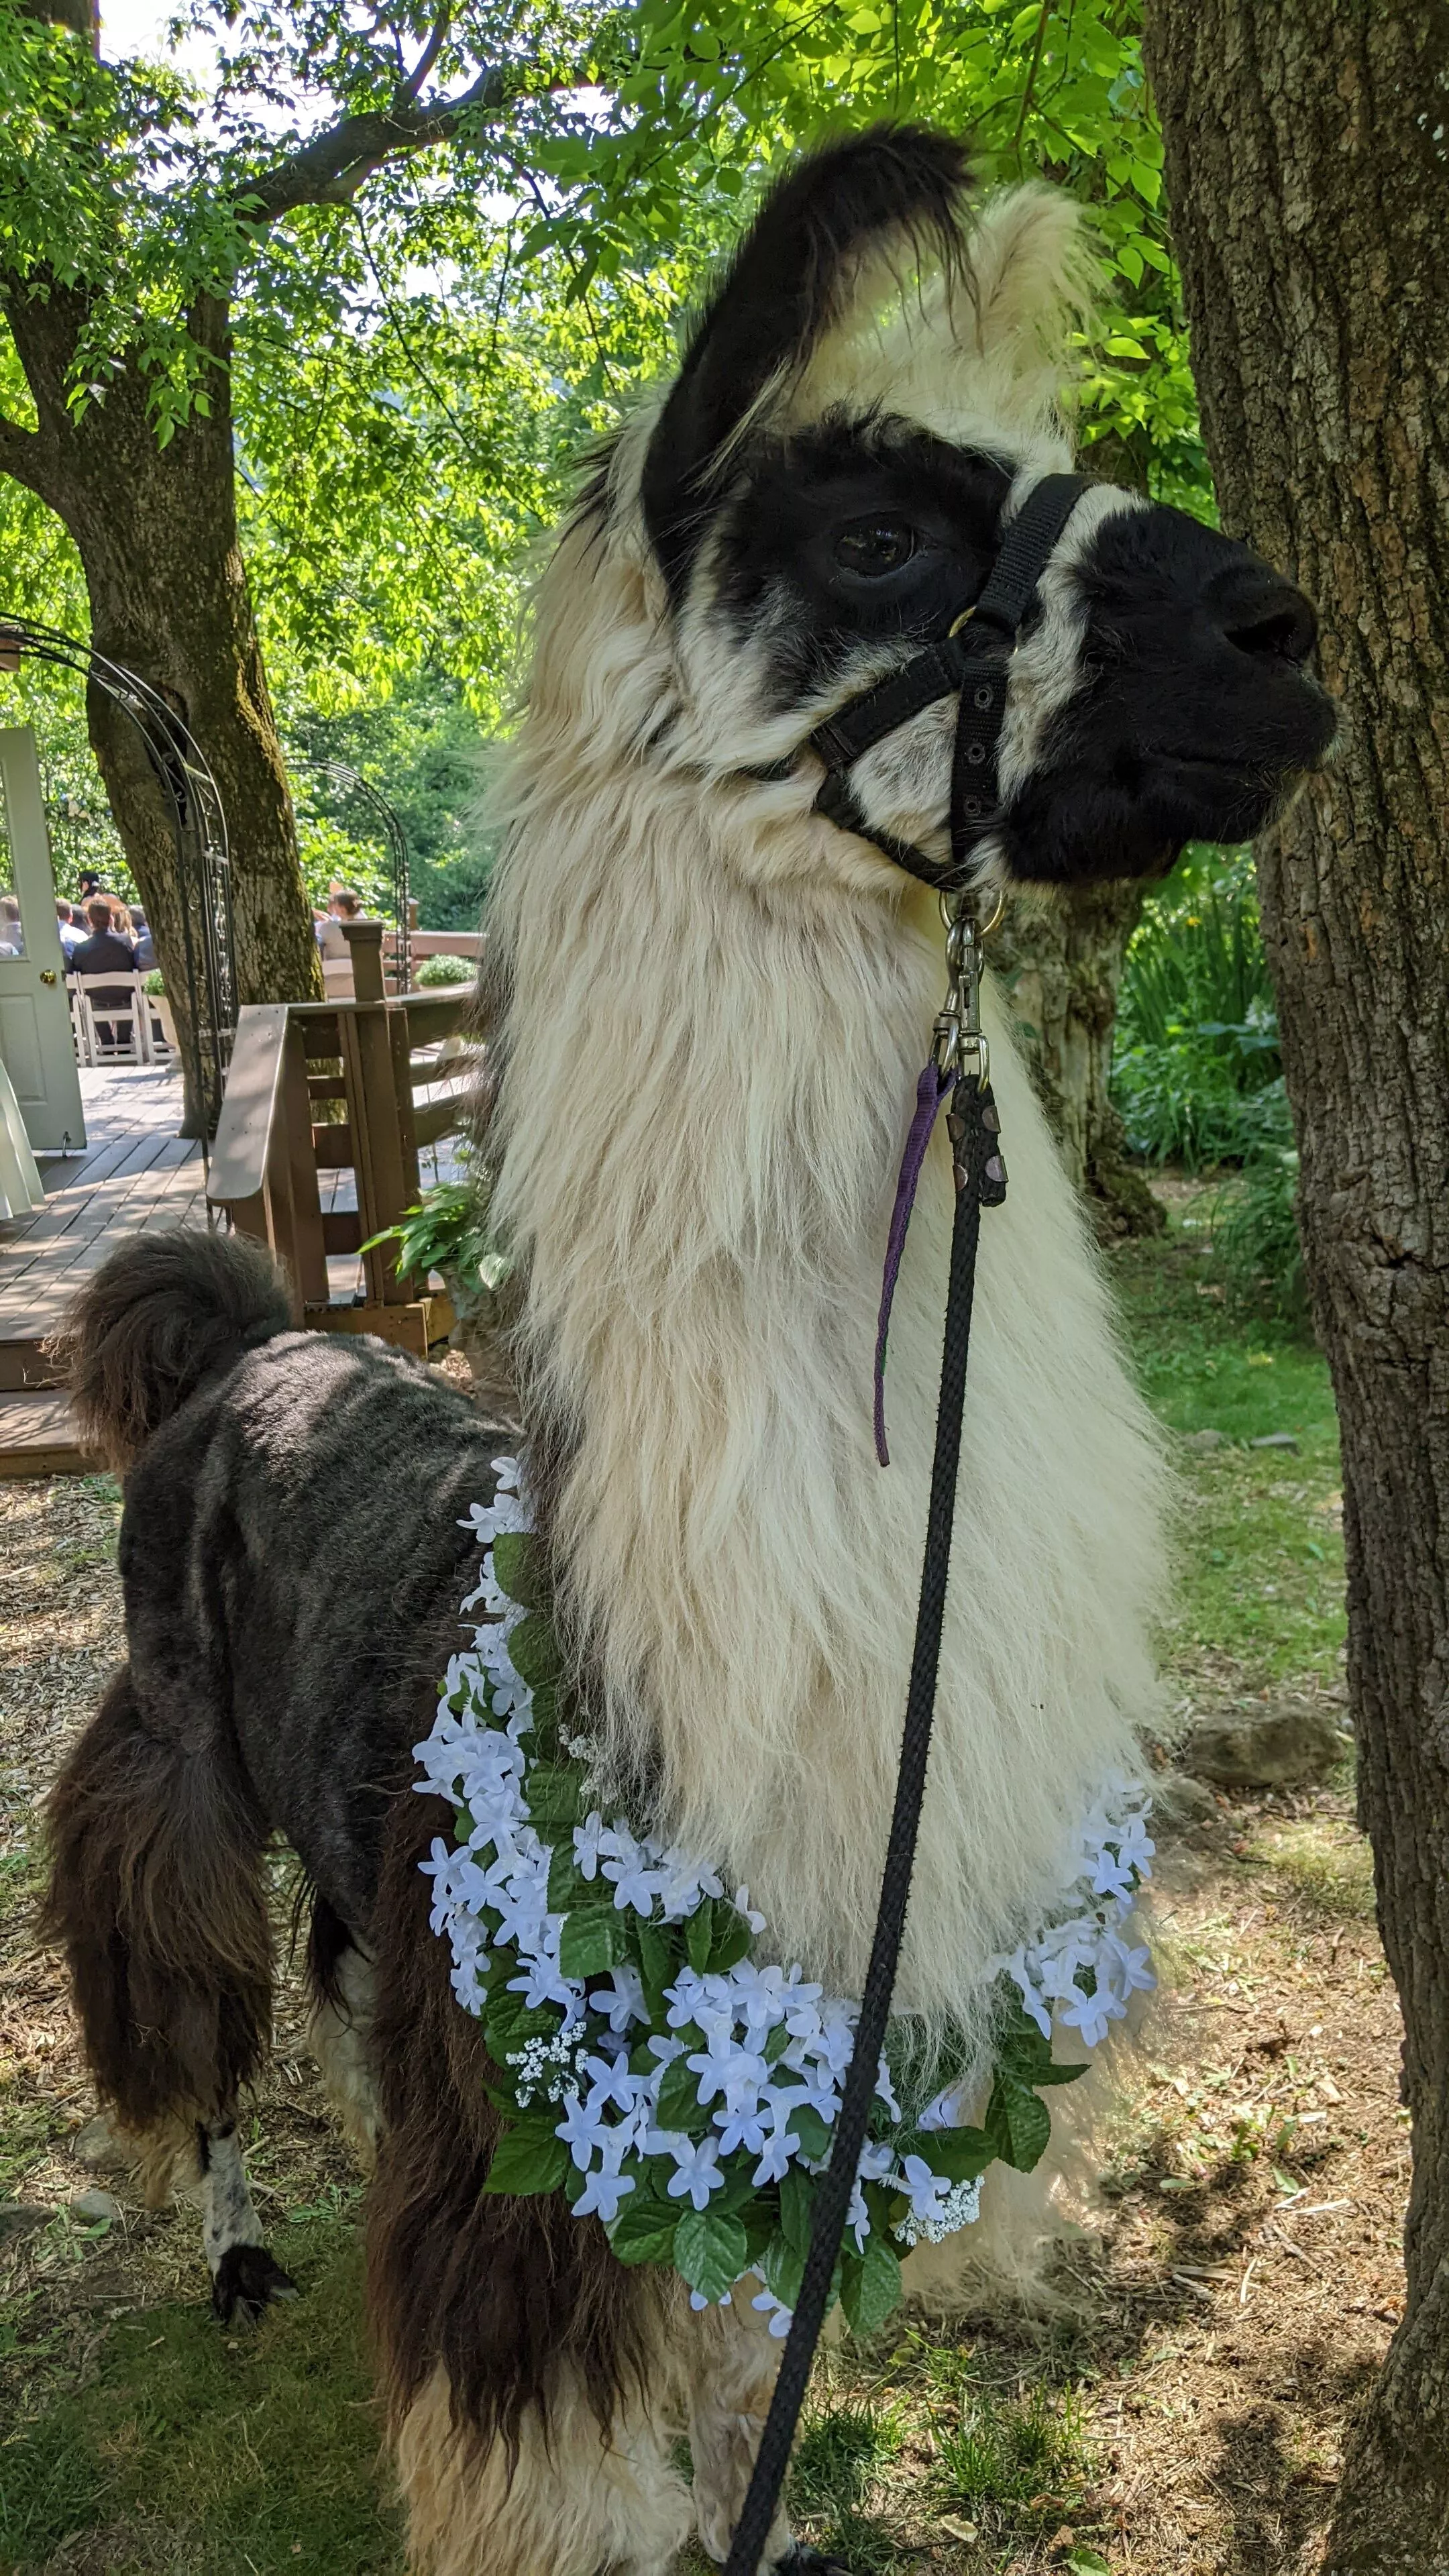 A photo of a llama named King at a wedding